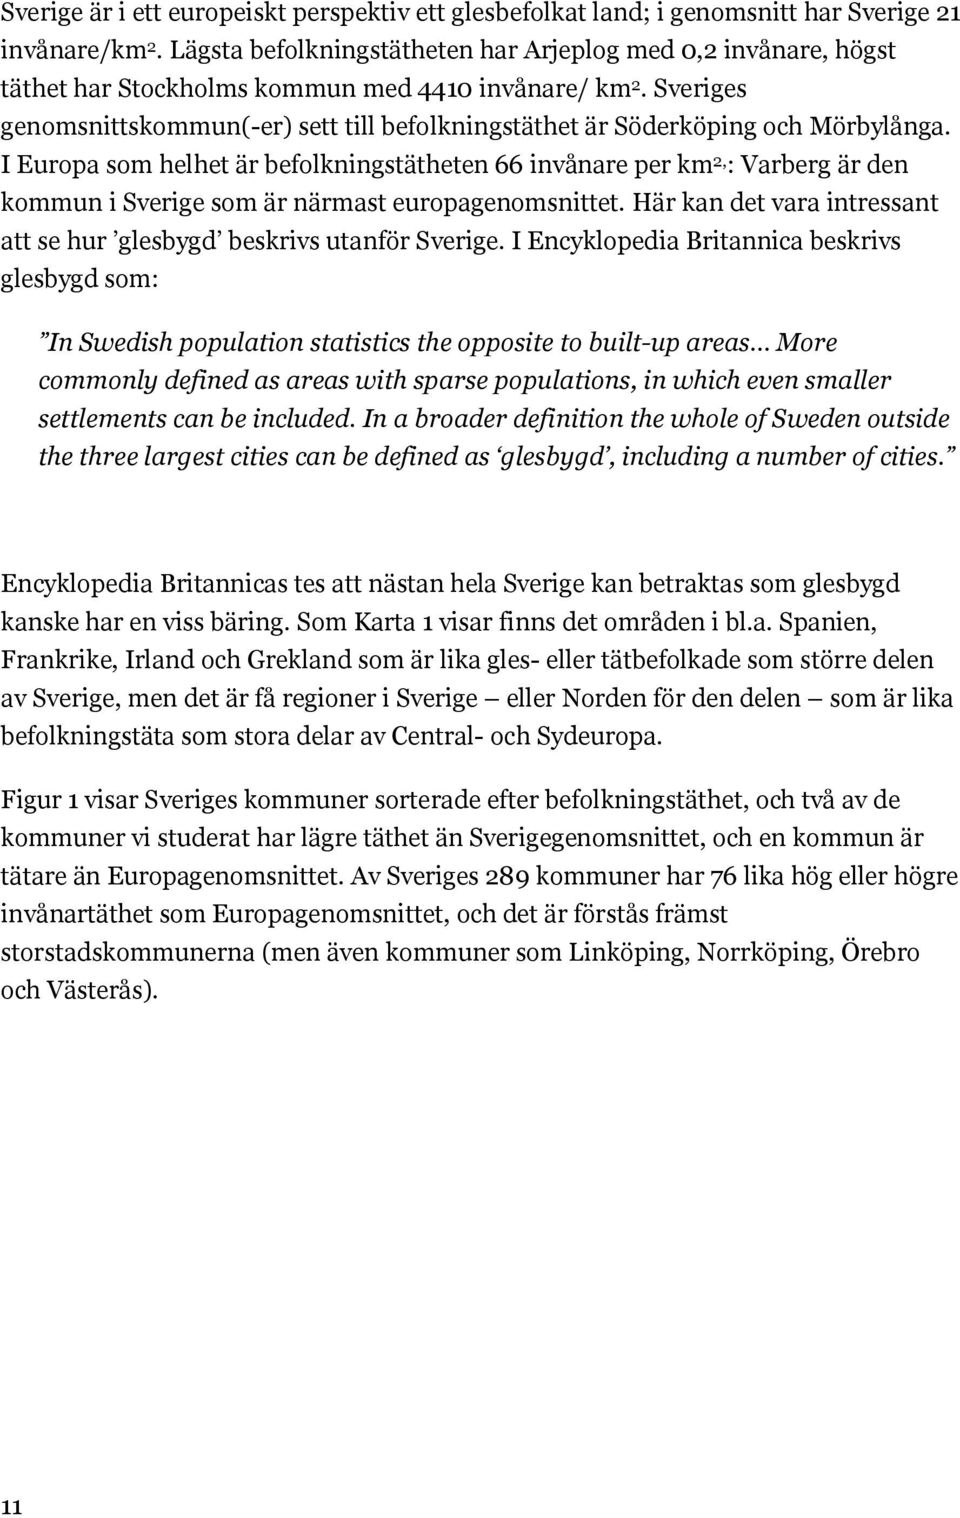 Sveriges genomsnittskommun(-er) sett till befolkningstäthet är Söderköping och Mörbylånga.